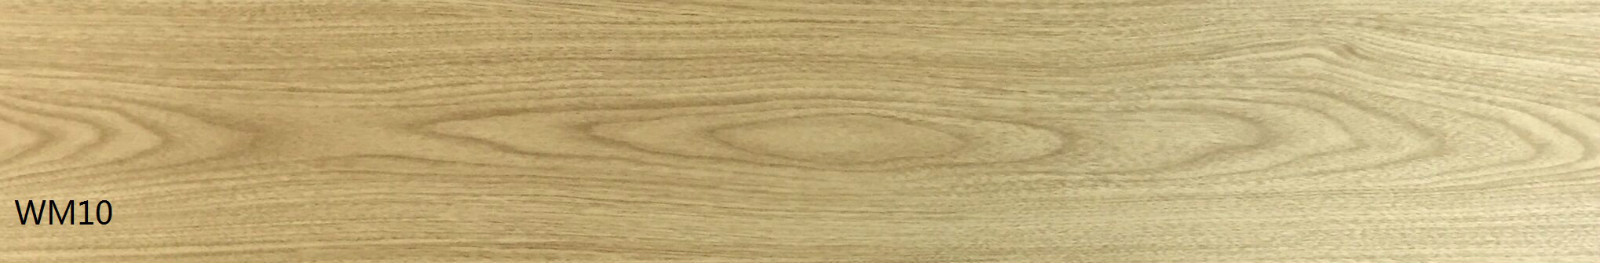 金鼠PVC地板木纹WM10